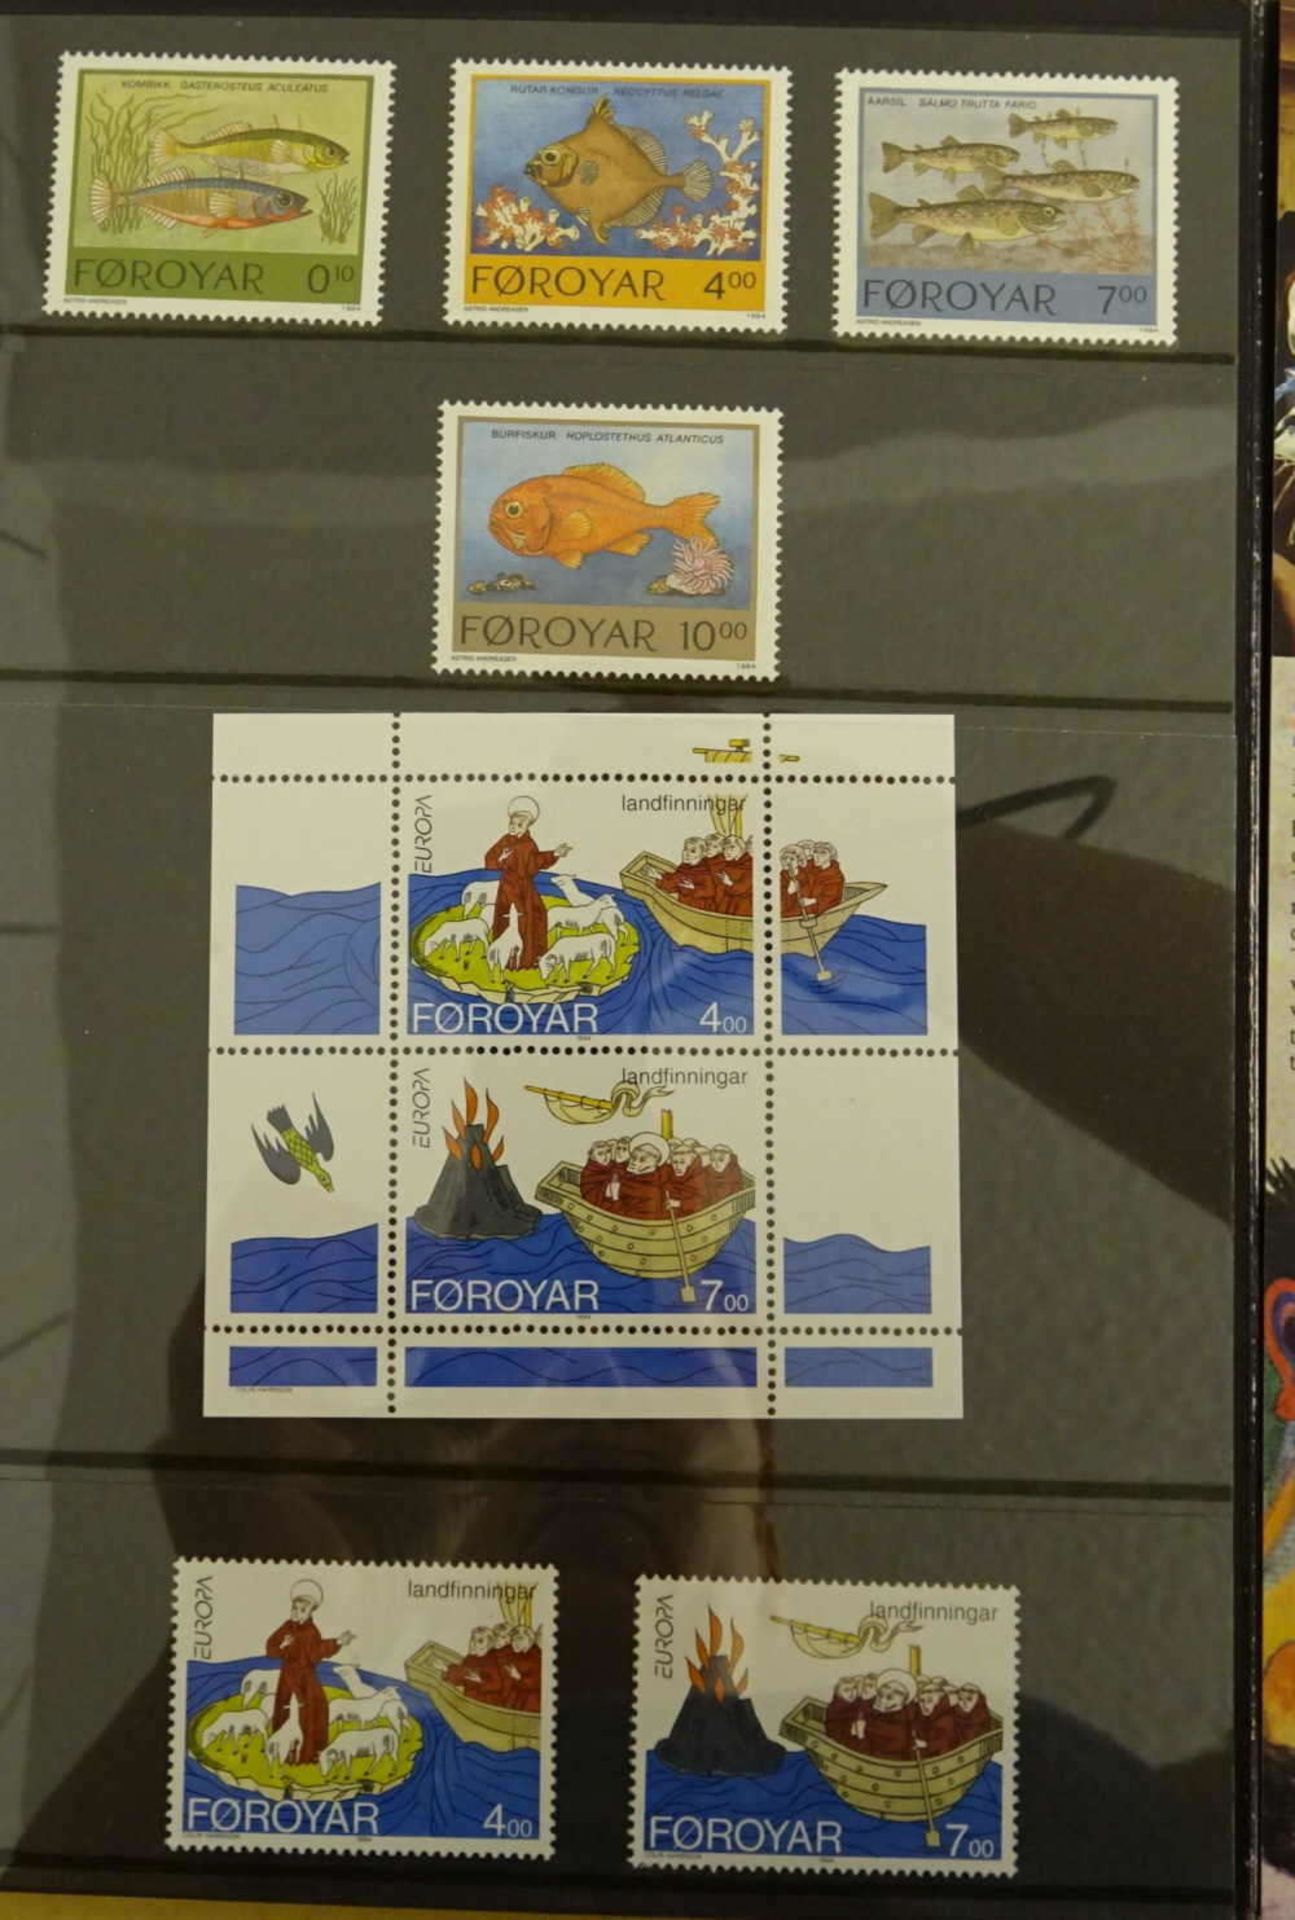 Dänemark - Färöer, 1975/96, umfangreiche Dubletten aus 6 großen Steckkarten, meist in Paaren mit - Bild 3 aus 3